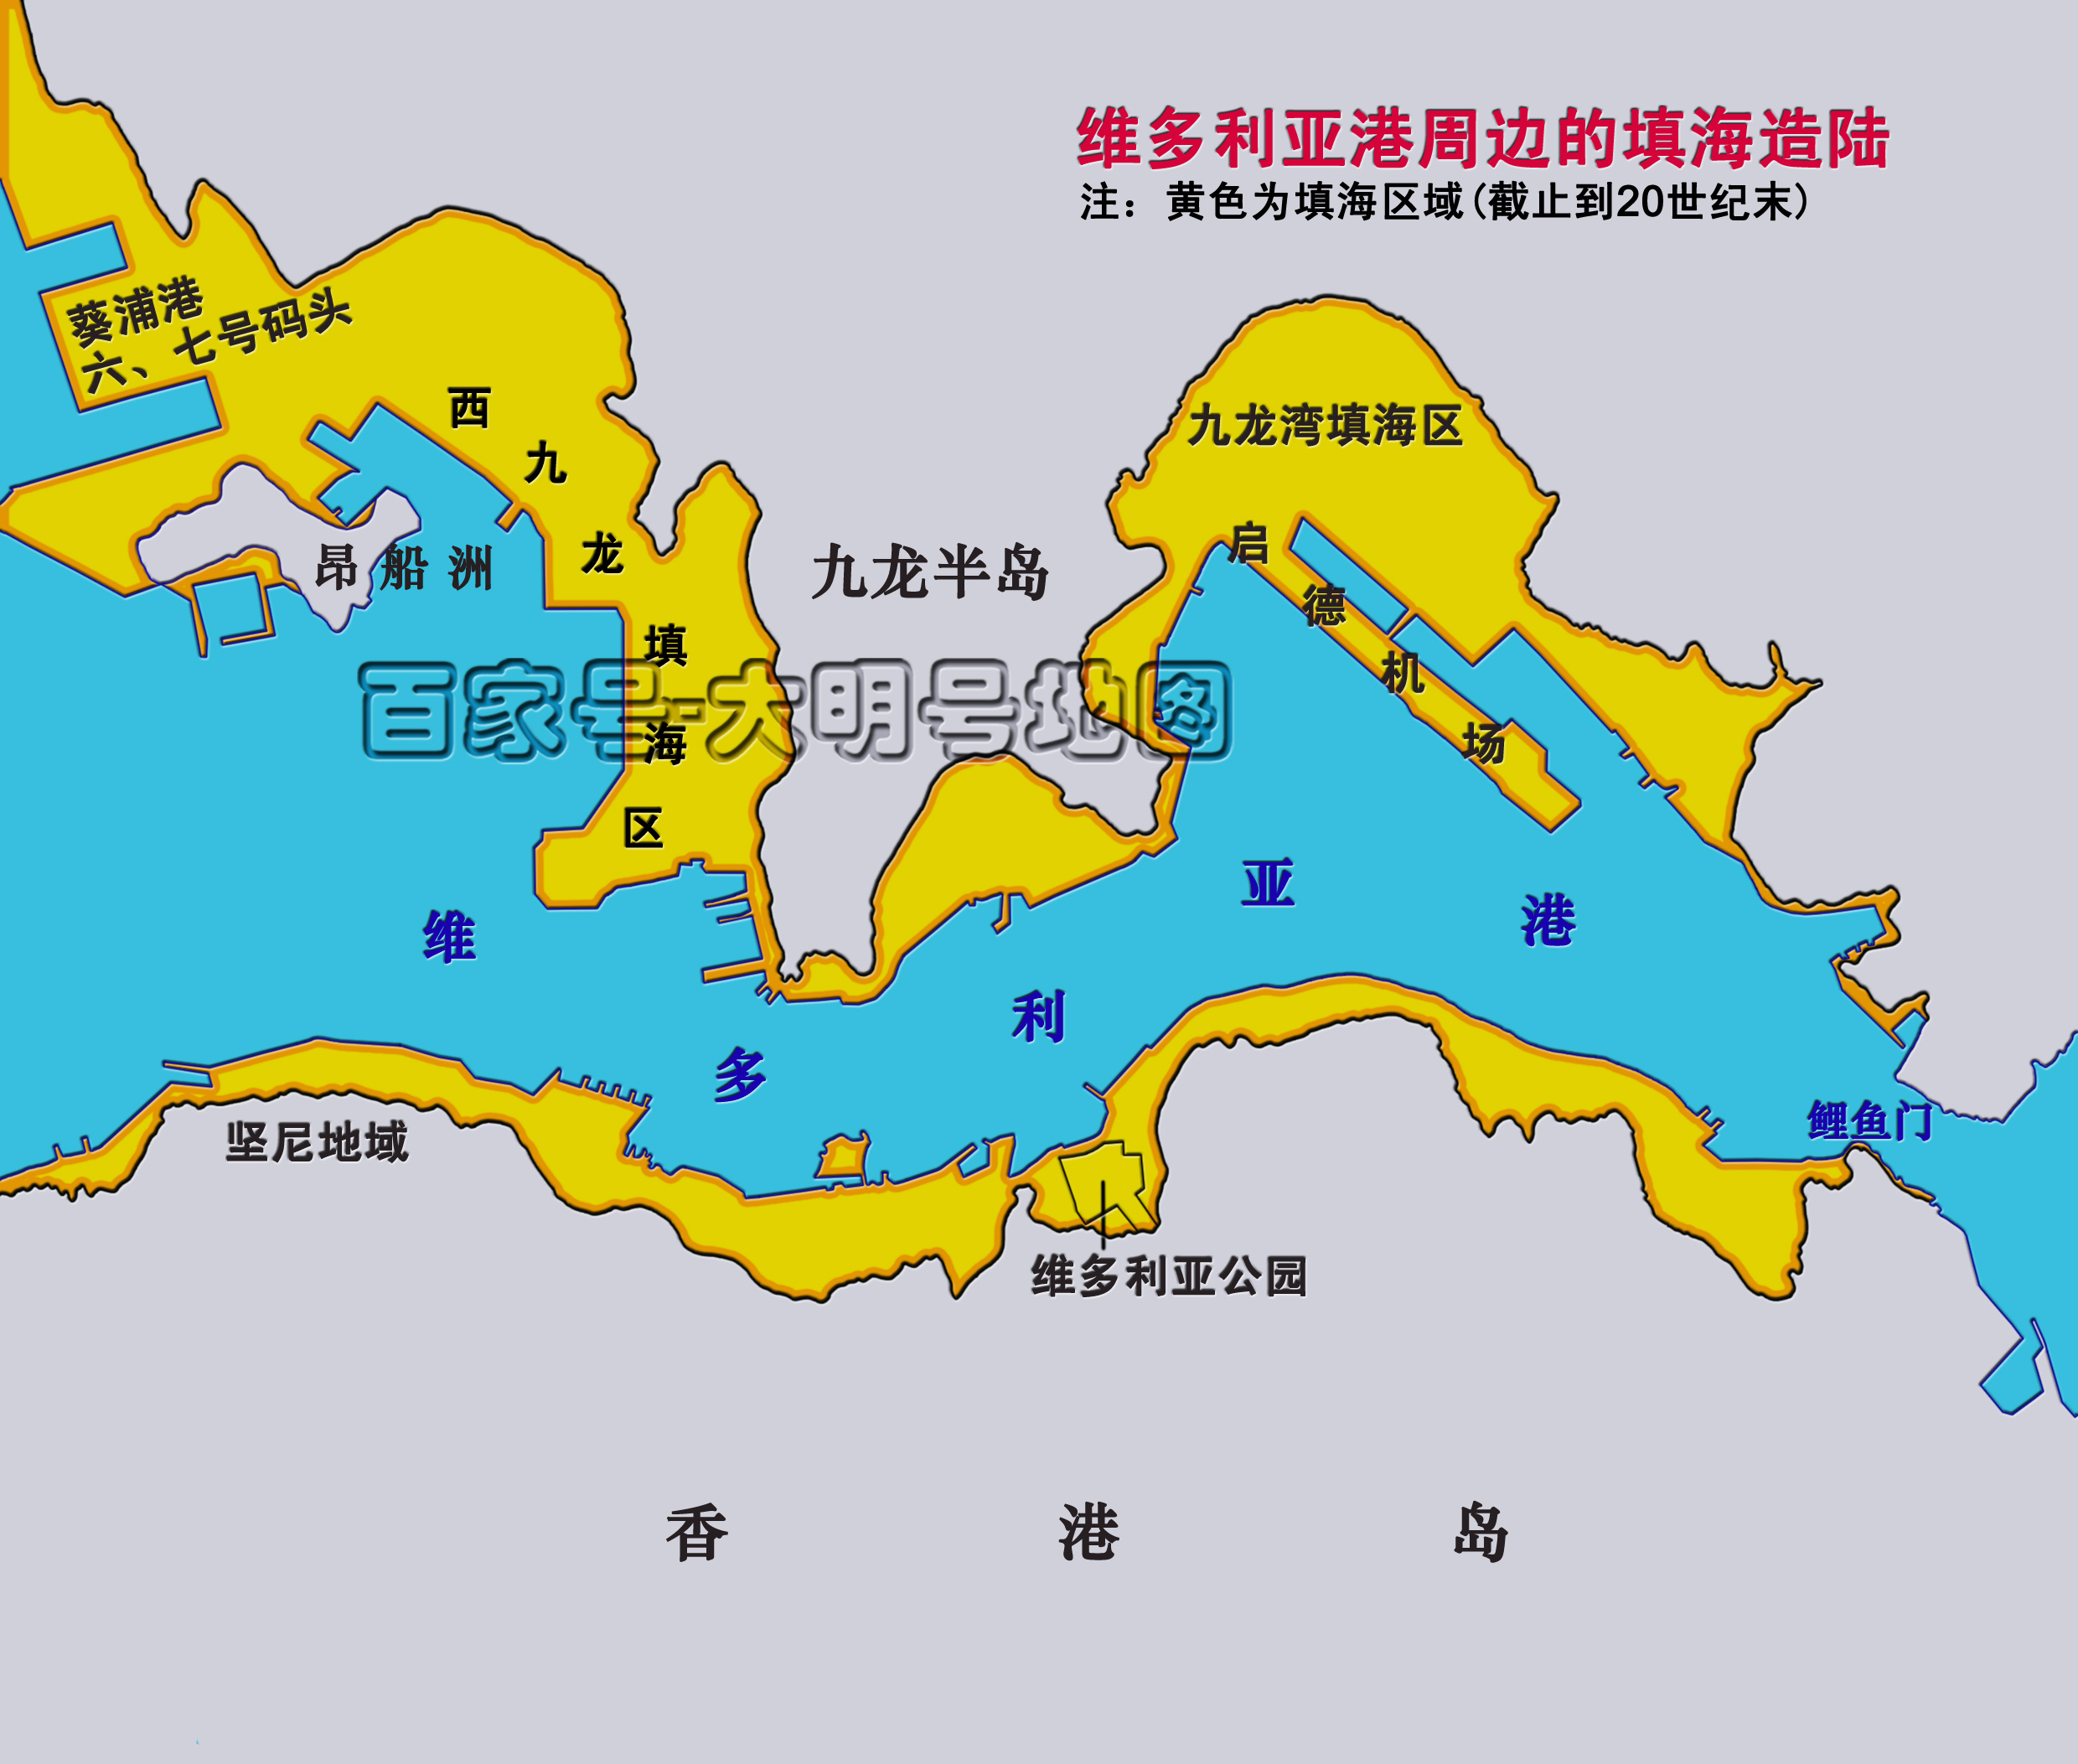 图说香港填海,百余年时间增加75平方公里土地,比两个